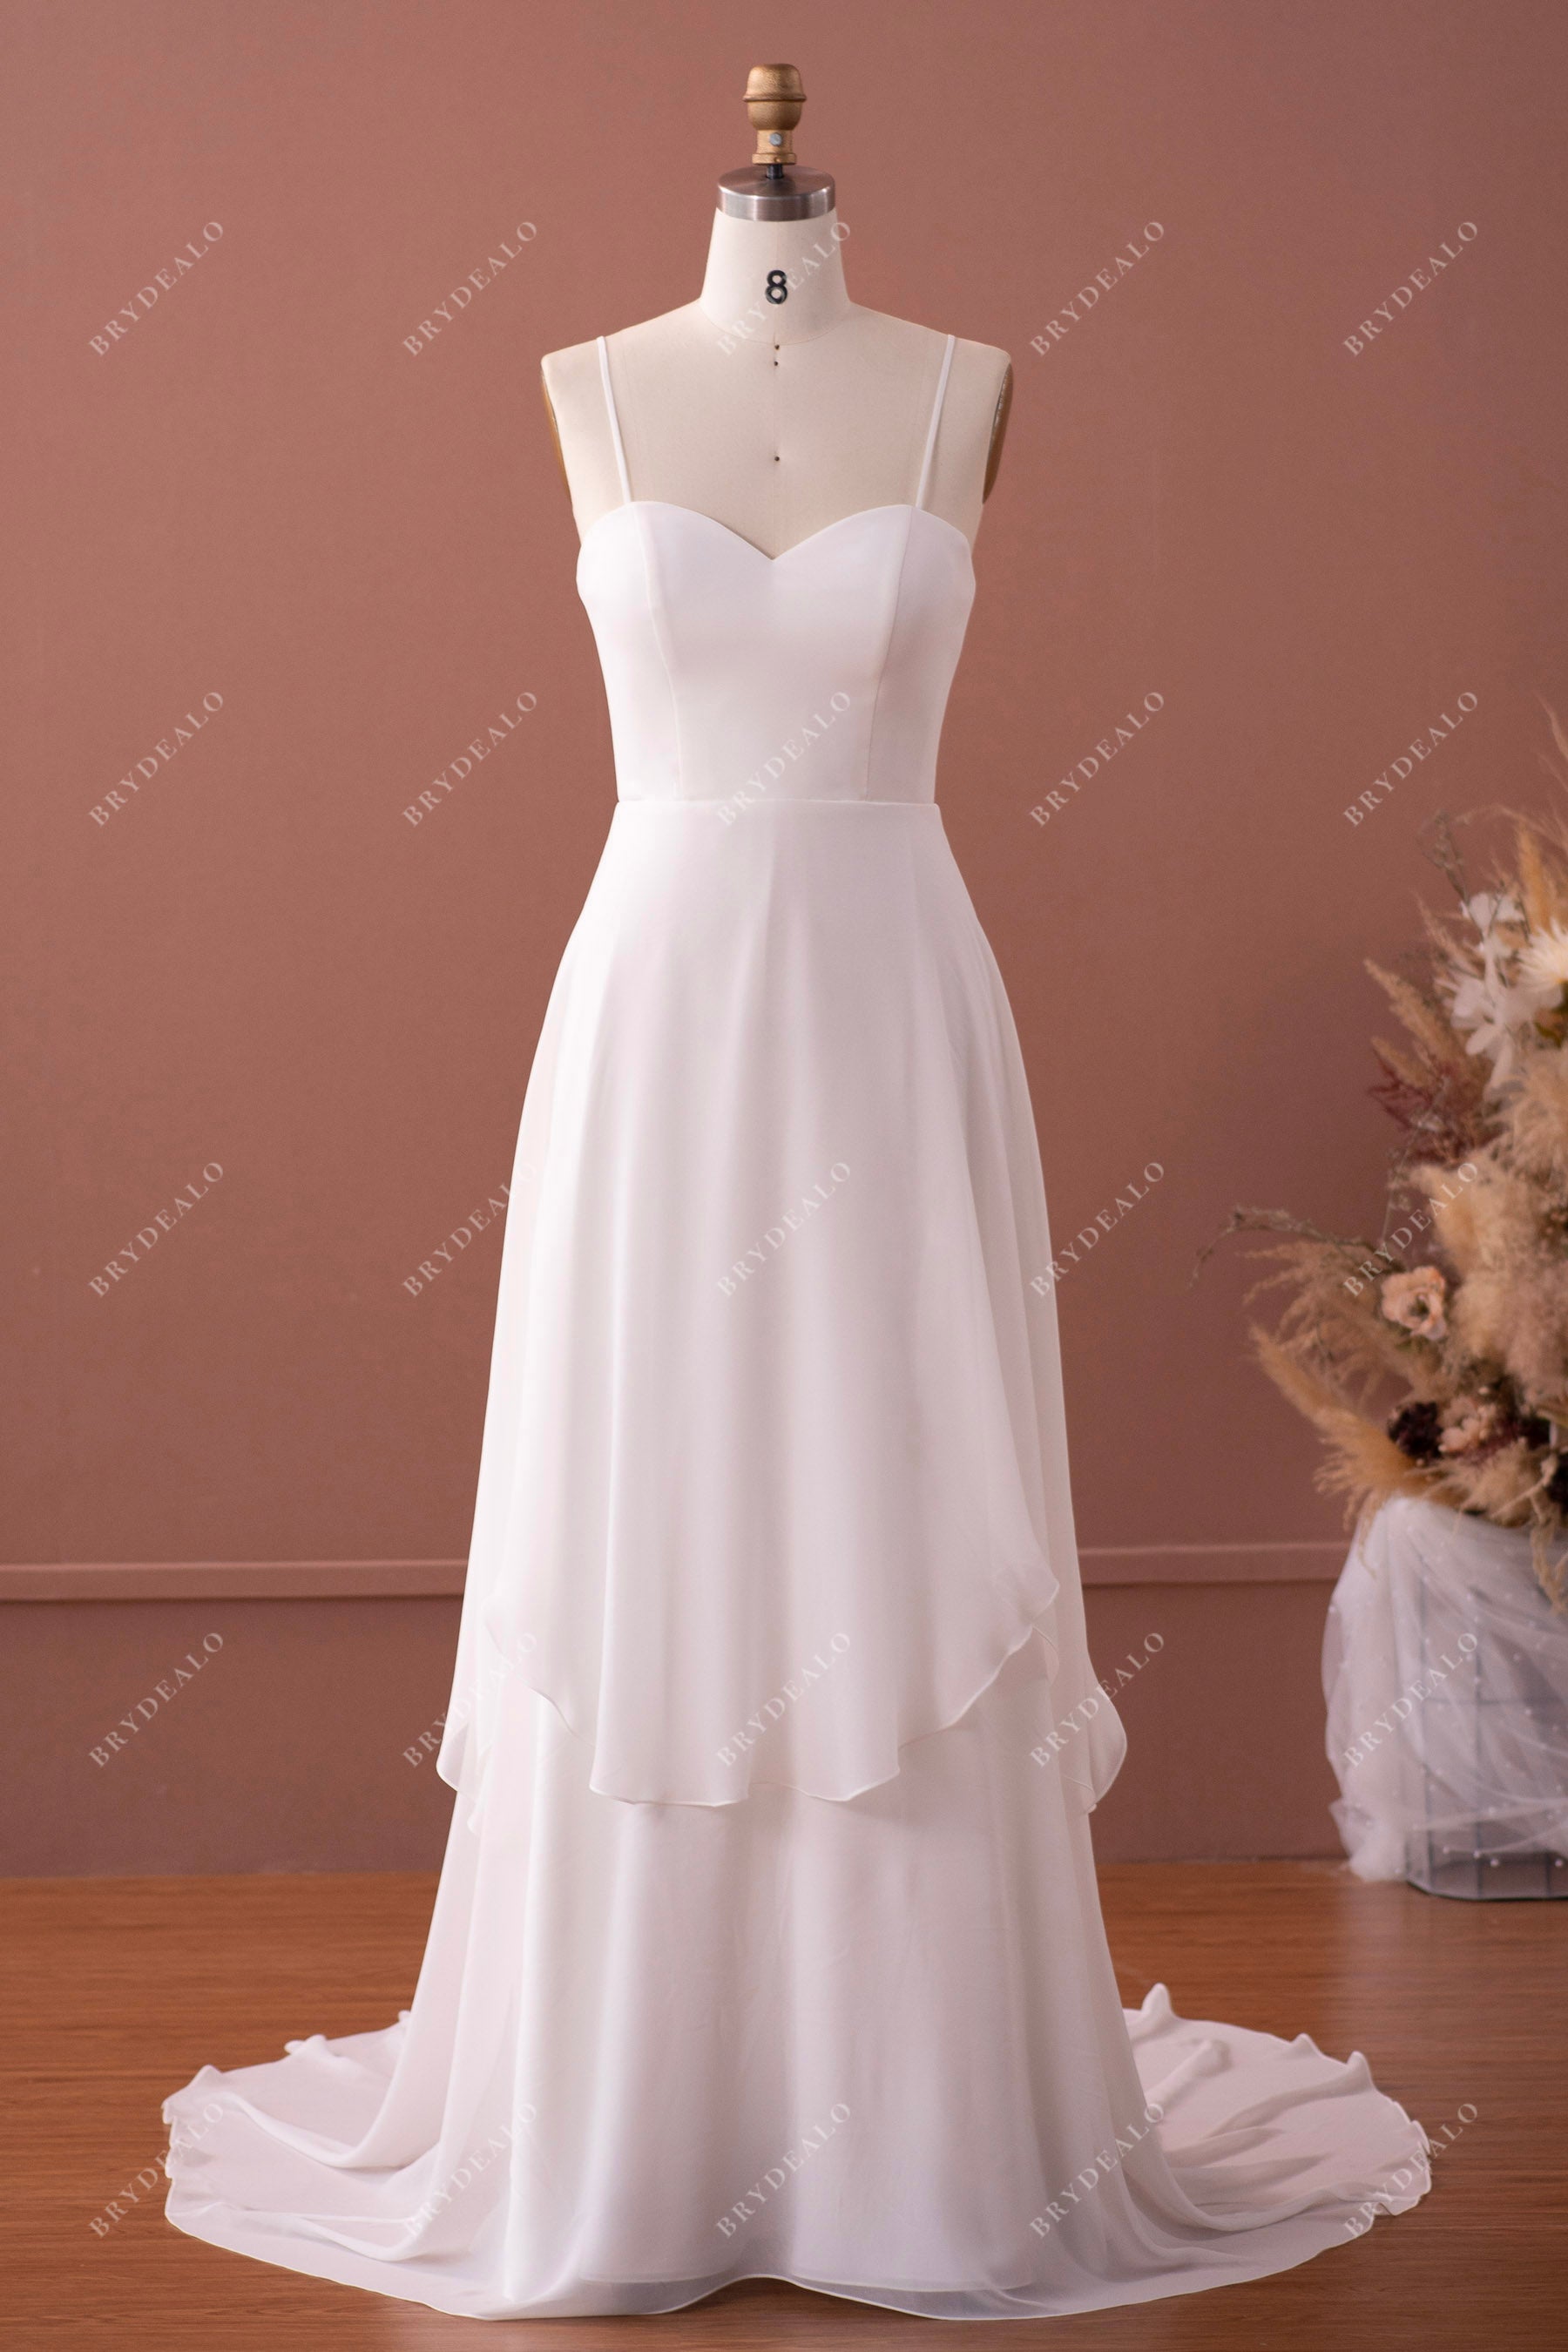 straps sweetheart chiffon wedding dress